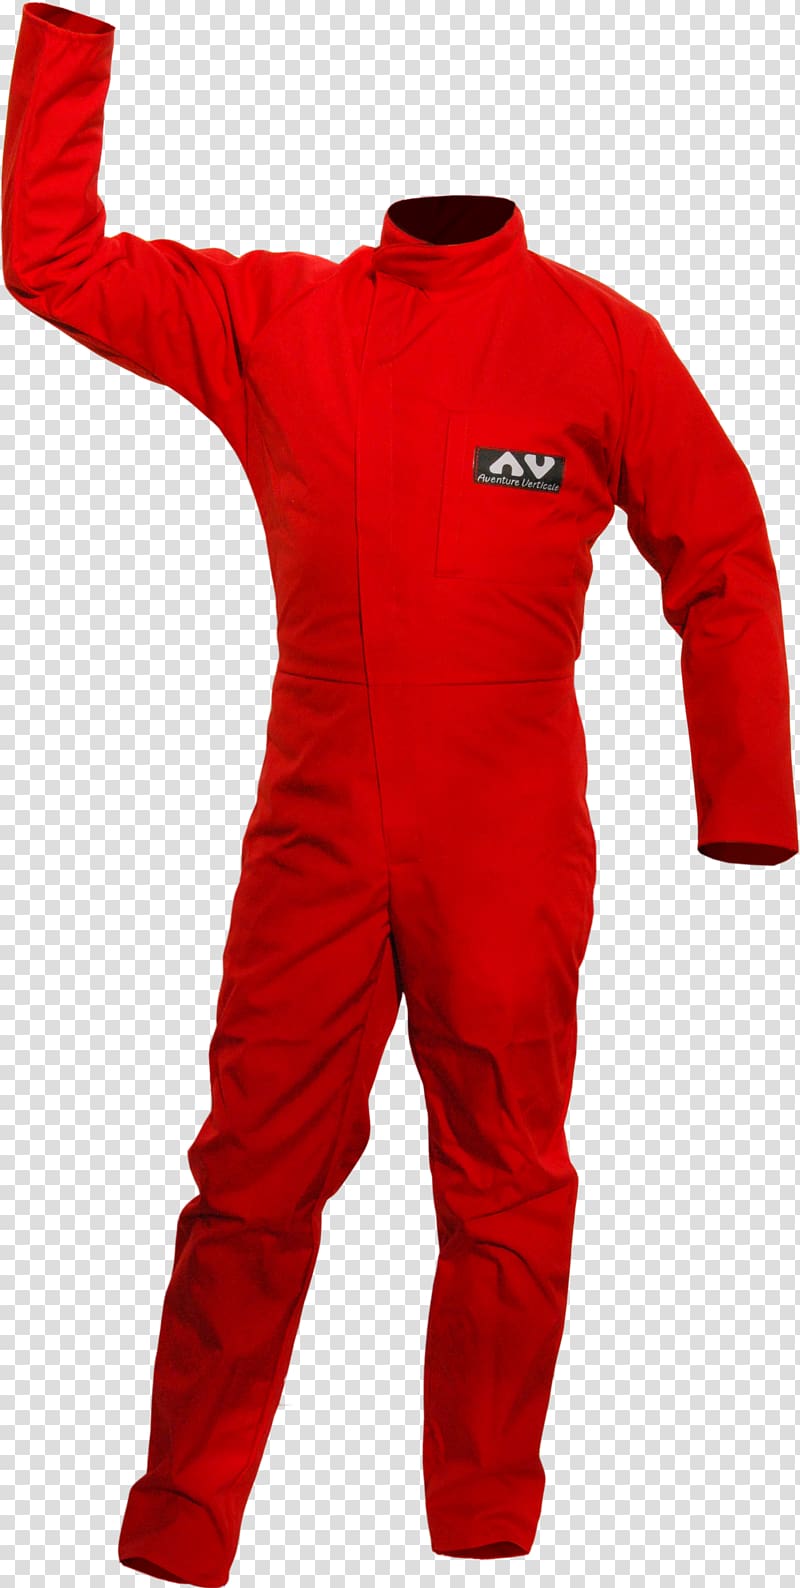 Jumpsuit Speleology Man Combination Boilersuit, stitches transparent background PNG clipart